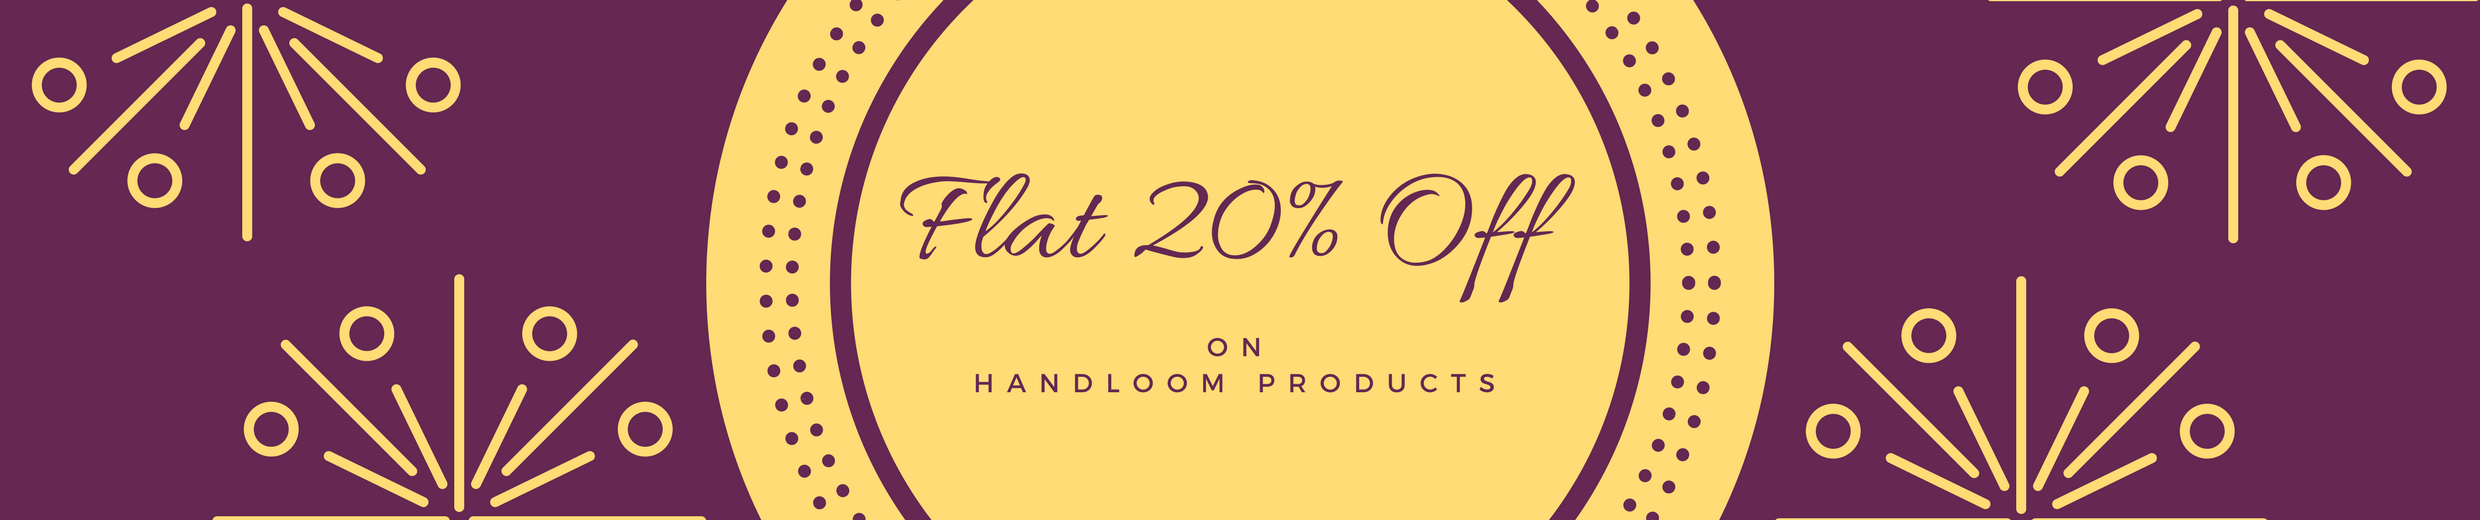 odikala offer on handloom products, get flat 20% off on handloom sarees